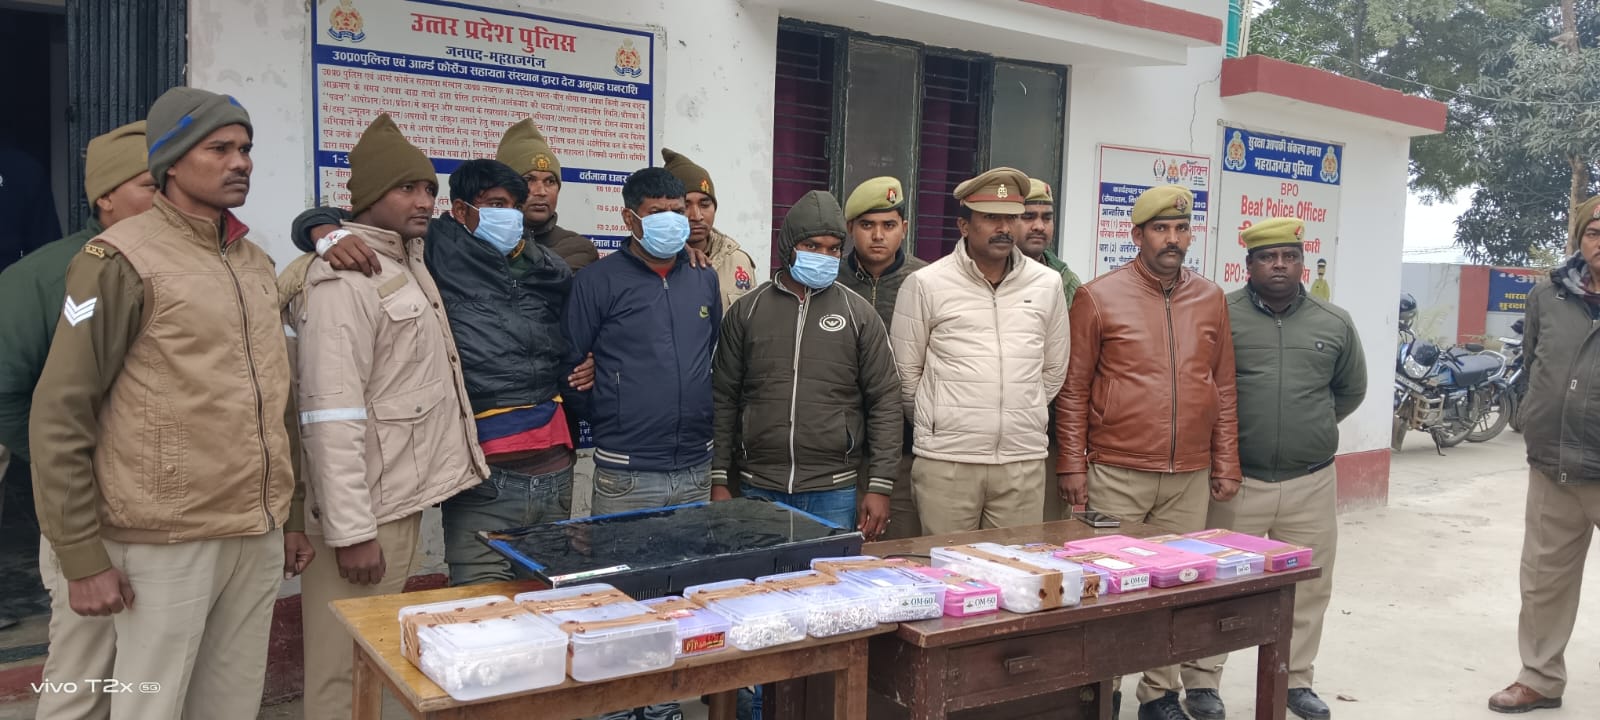 सिद्धार्थनगर के ज्वेलरी की दुकान में हुए लूट के अभियुक्तों के साथ महराजगंज पुलिस का मुठभेड़,सामान के साथ गिरफ्तार